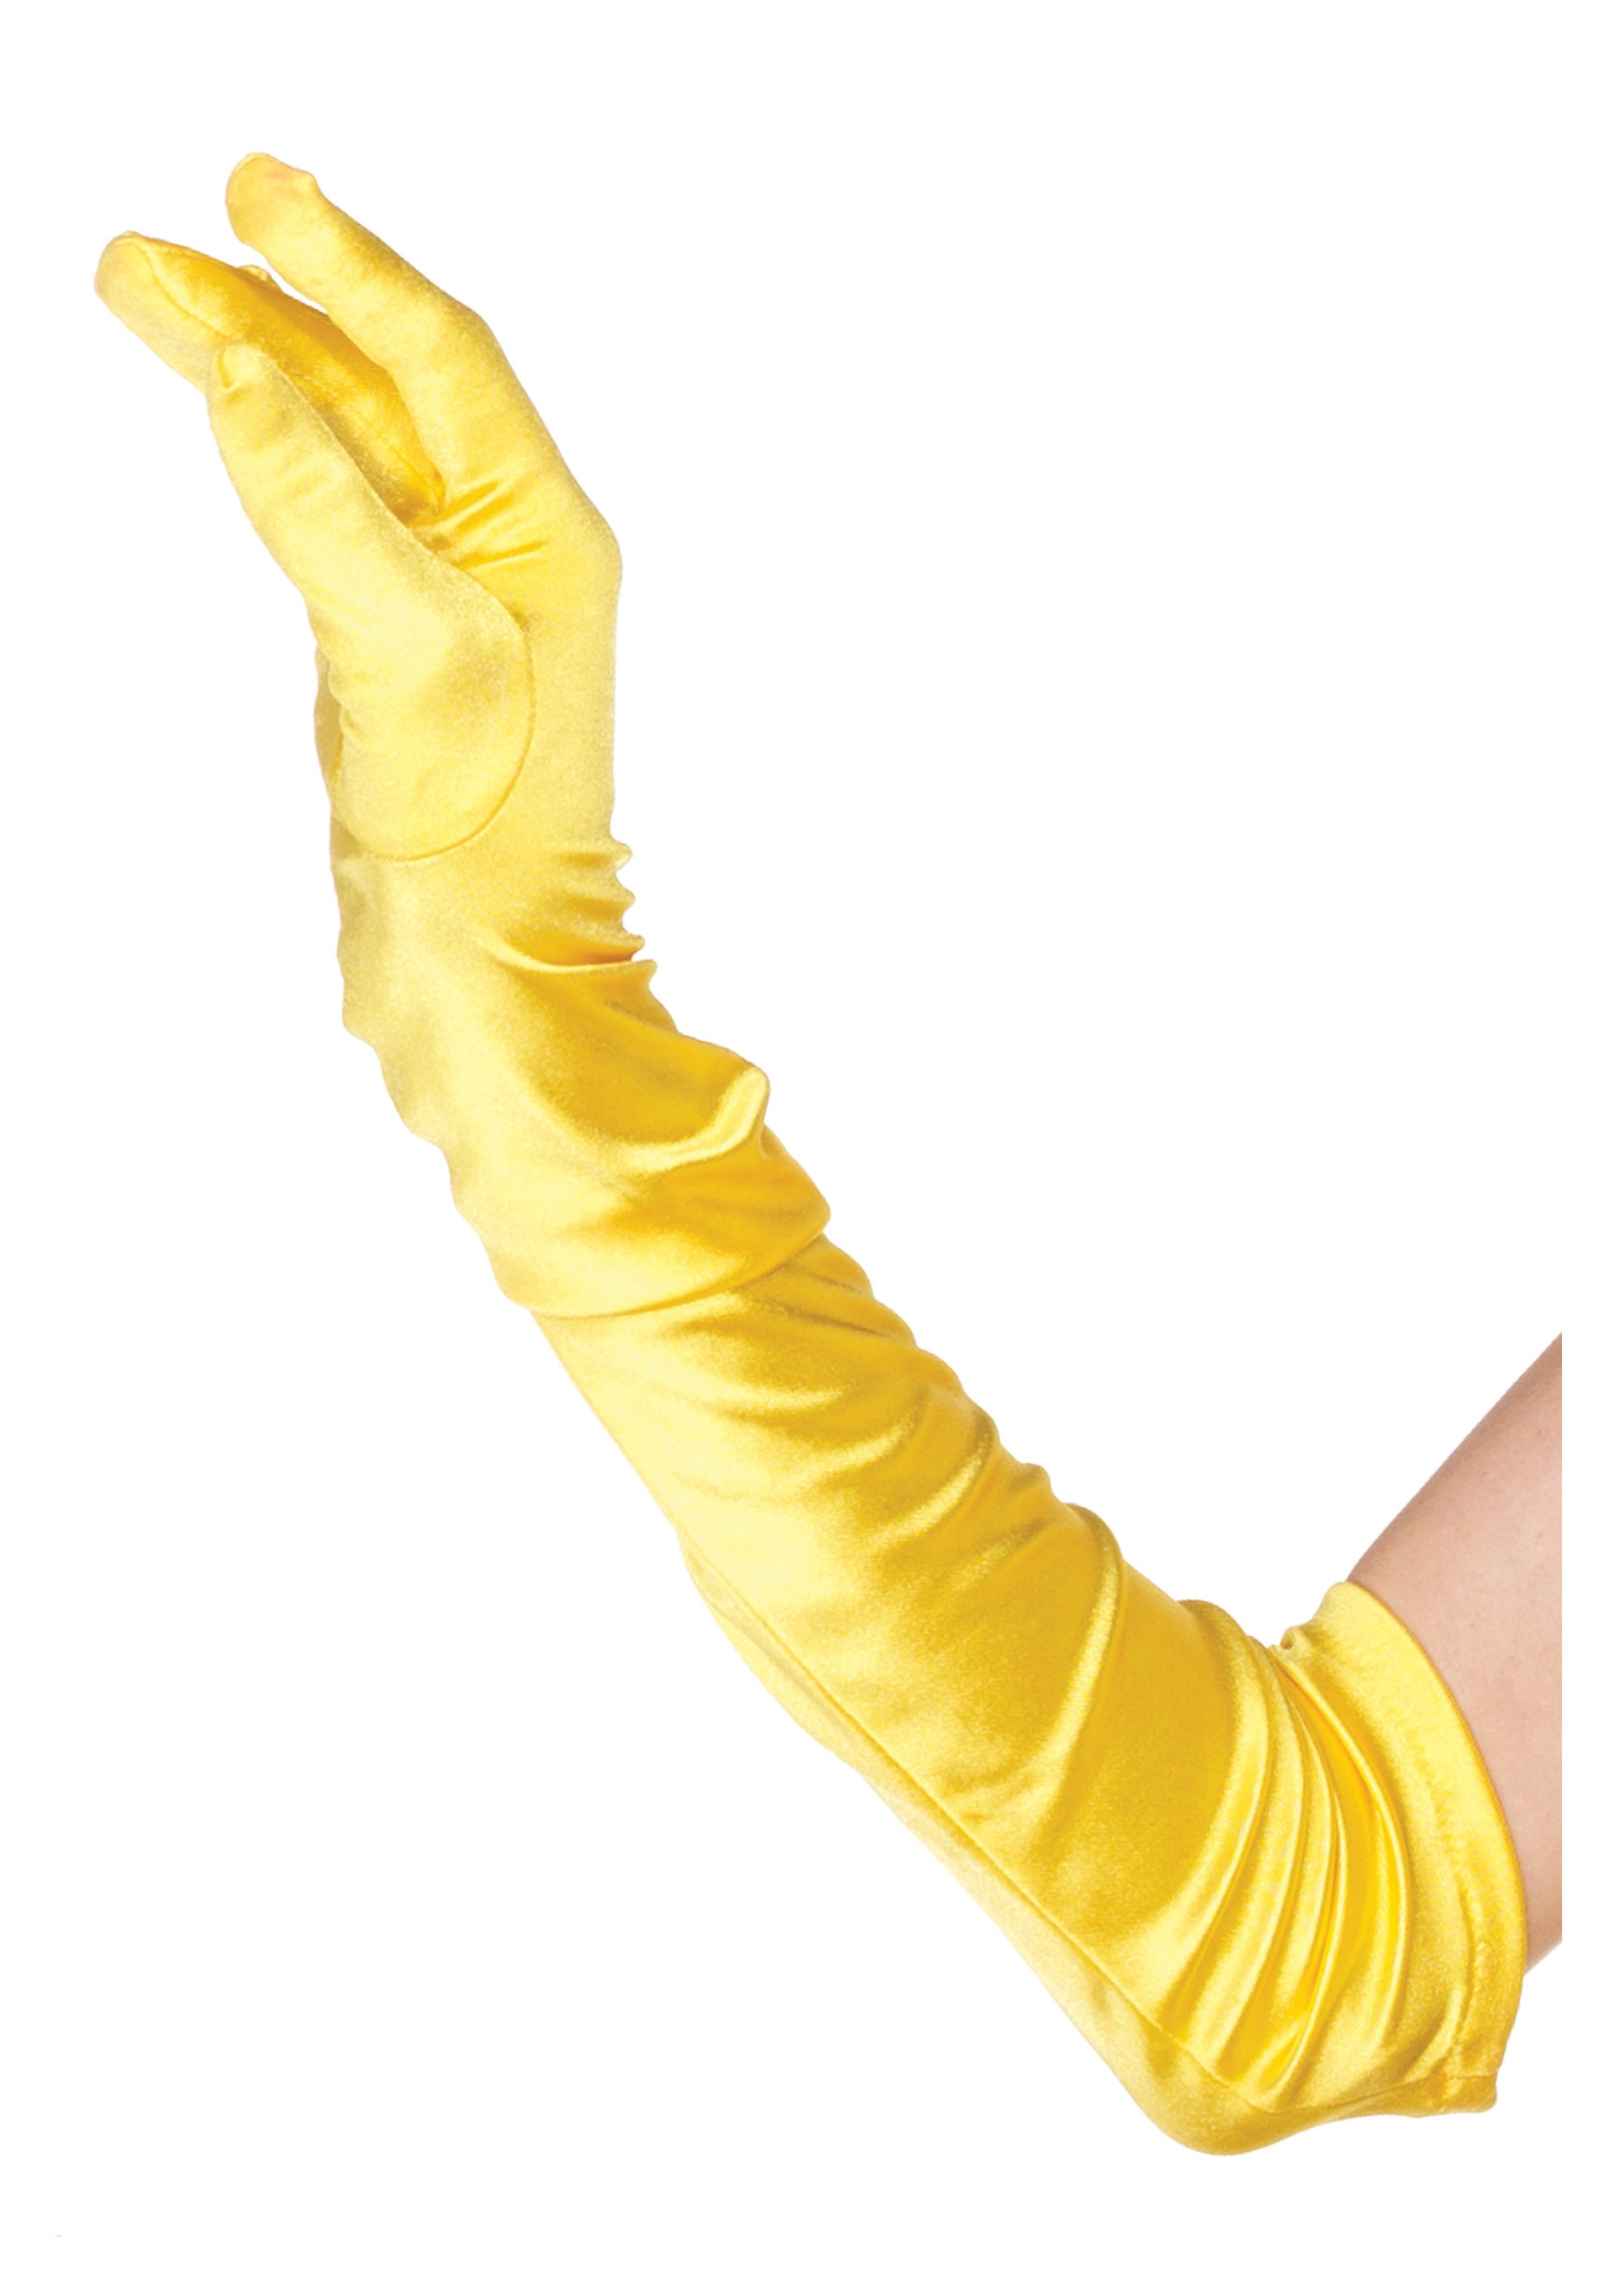 Guantes largos de color amarillo y talla única de 42 cm.